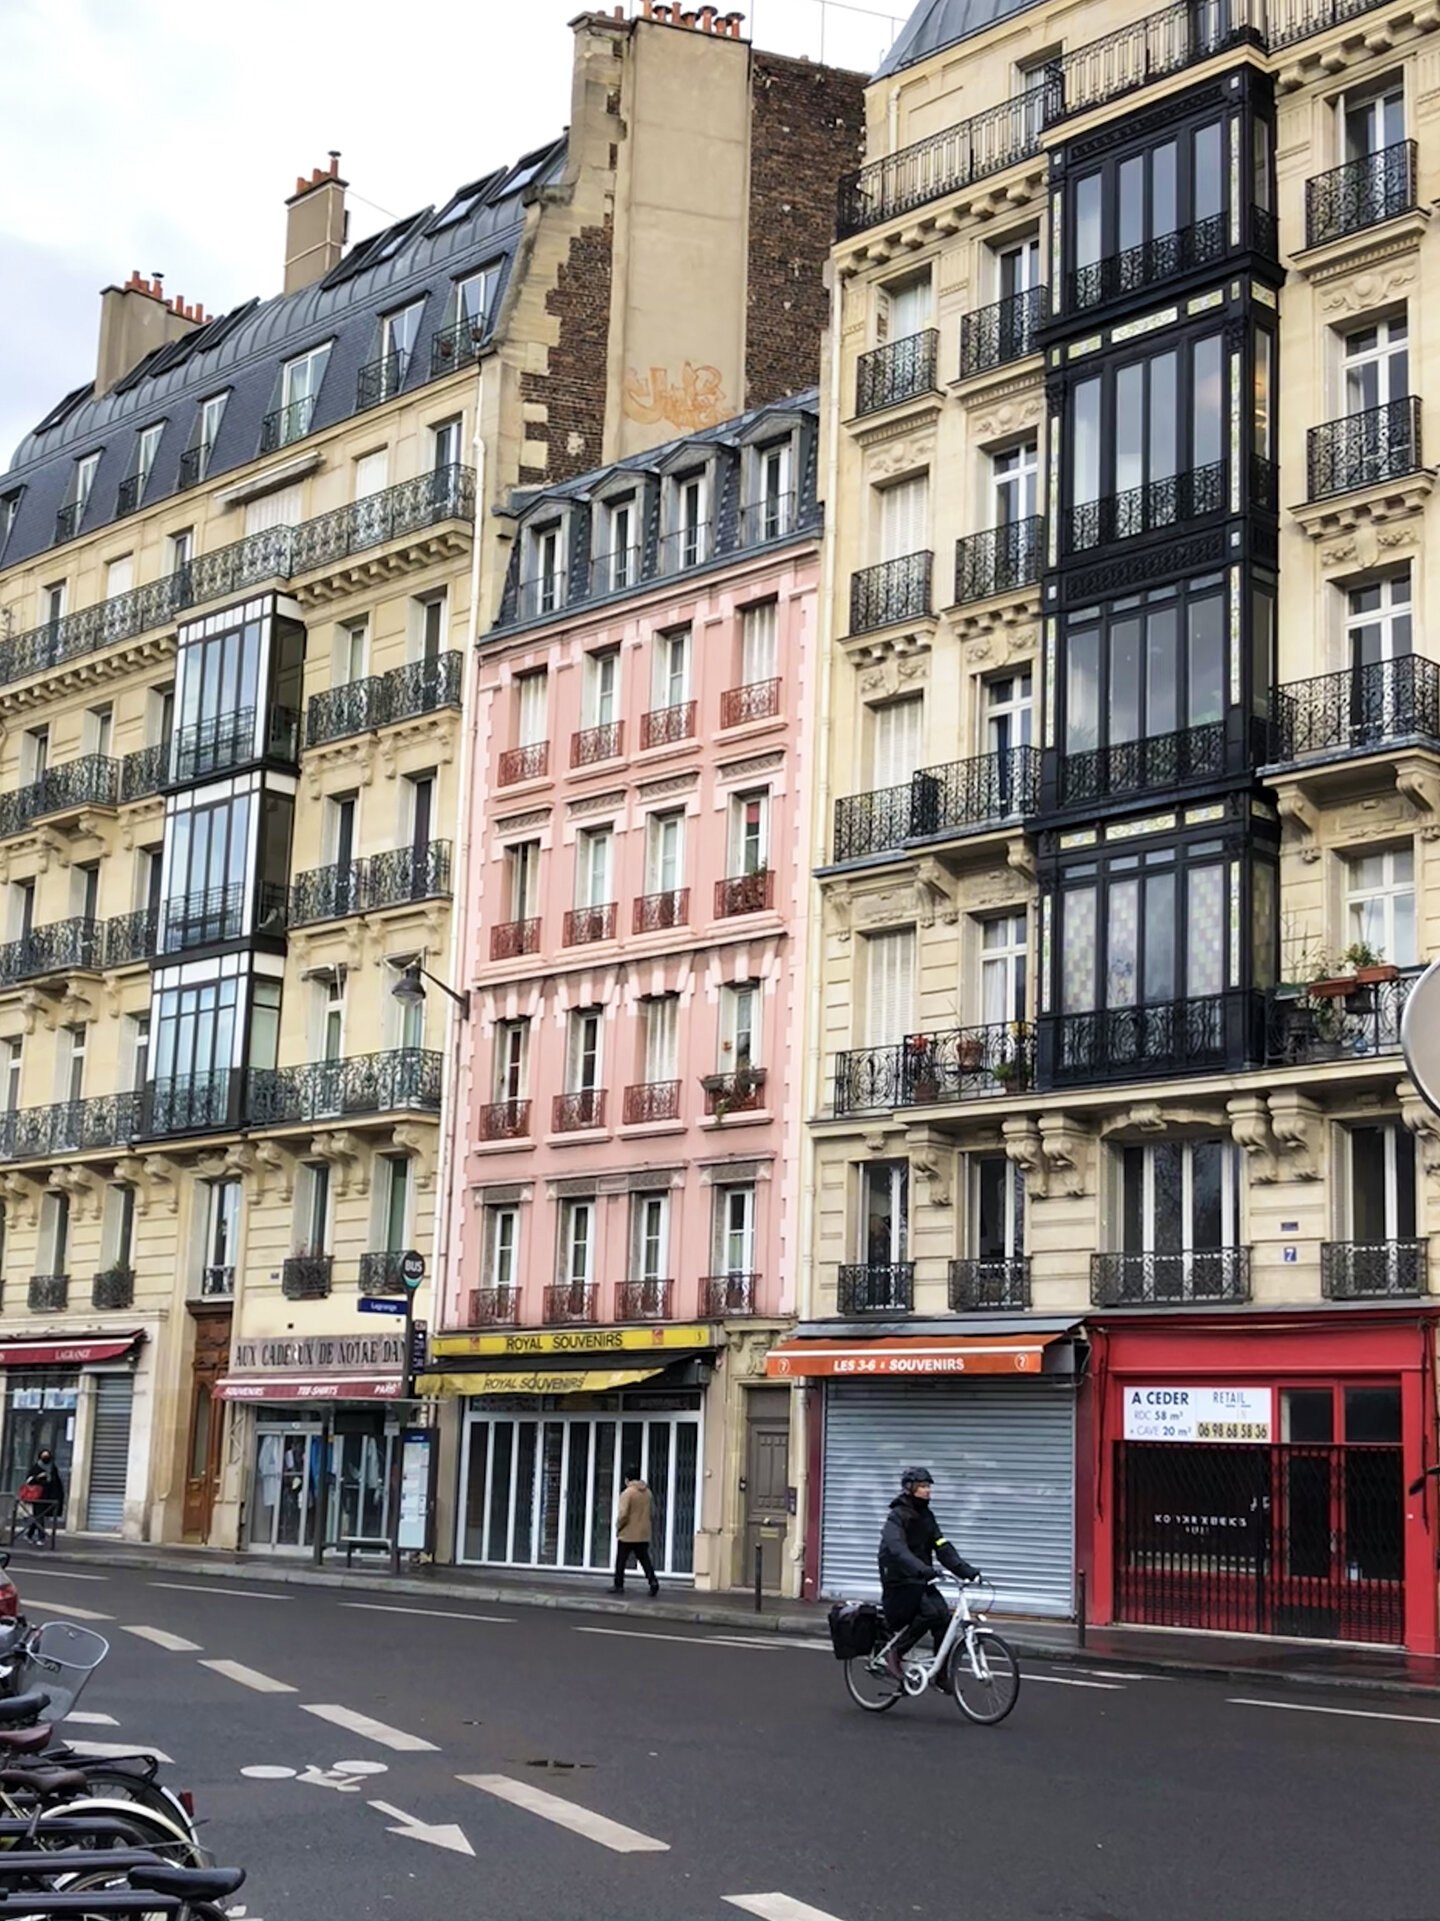 Saint Laurent and Rive Gauche: My Latest Travel Souvenir - Cathedrals &  Cafes Blog